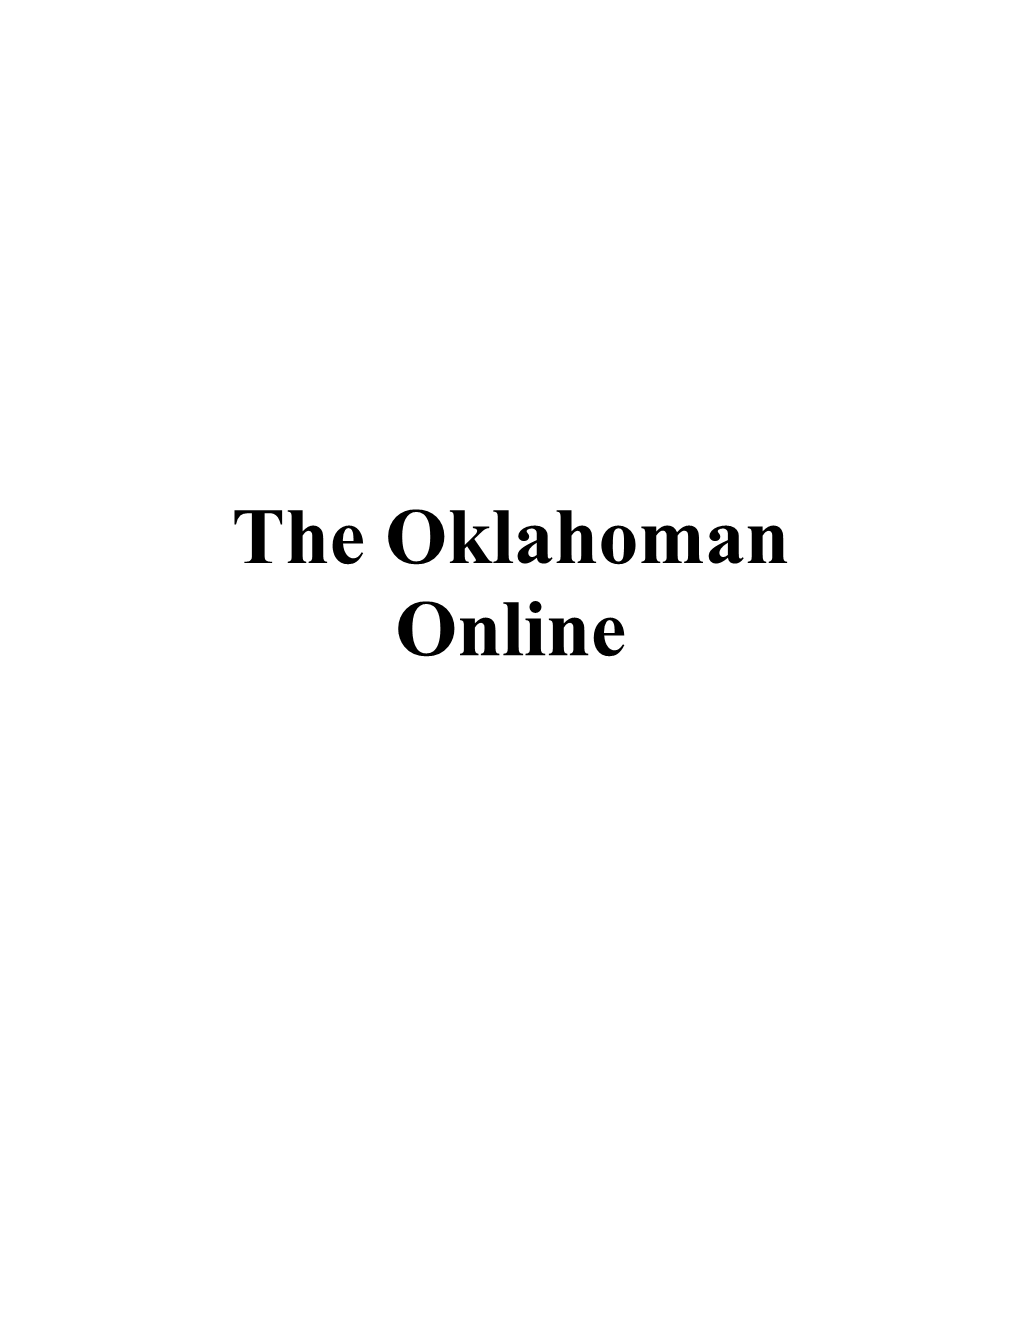 The Oklahoman Online